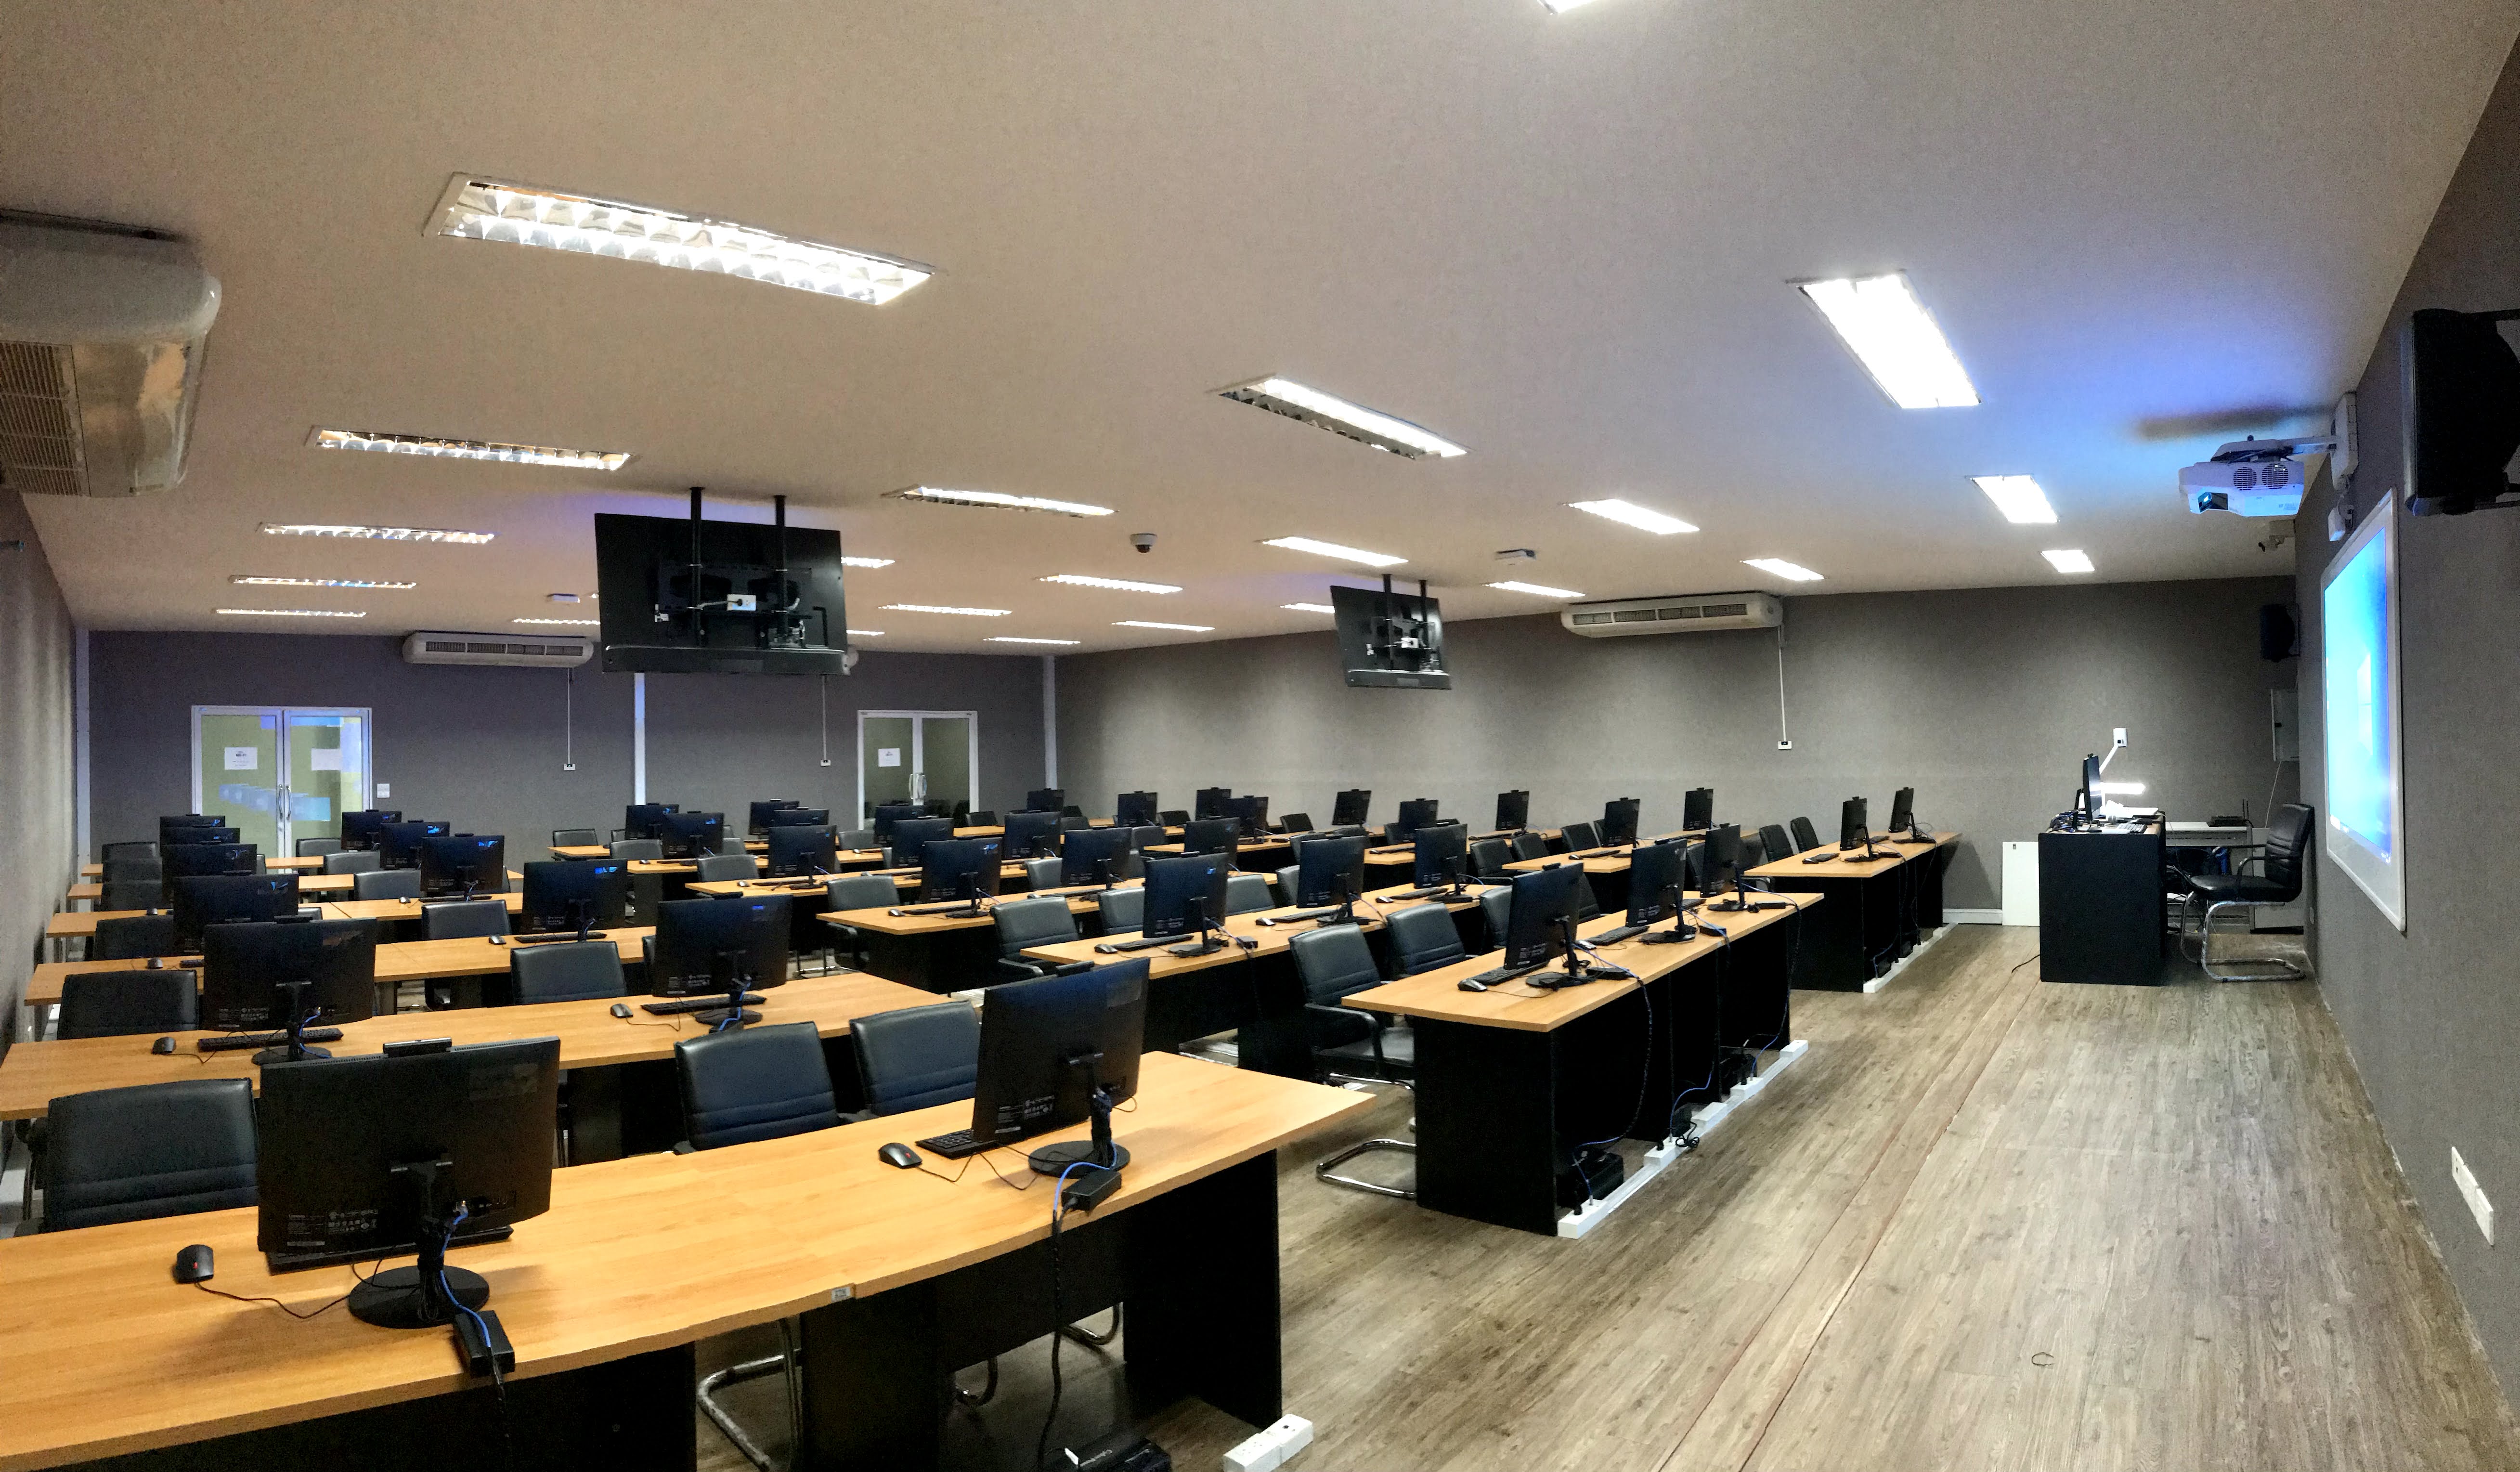 ห้องปฏิบัติการคอมพิวเตอร์ (Computer lab)